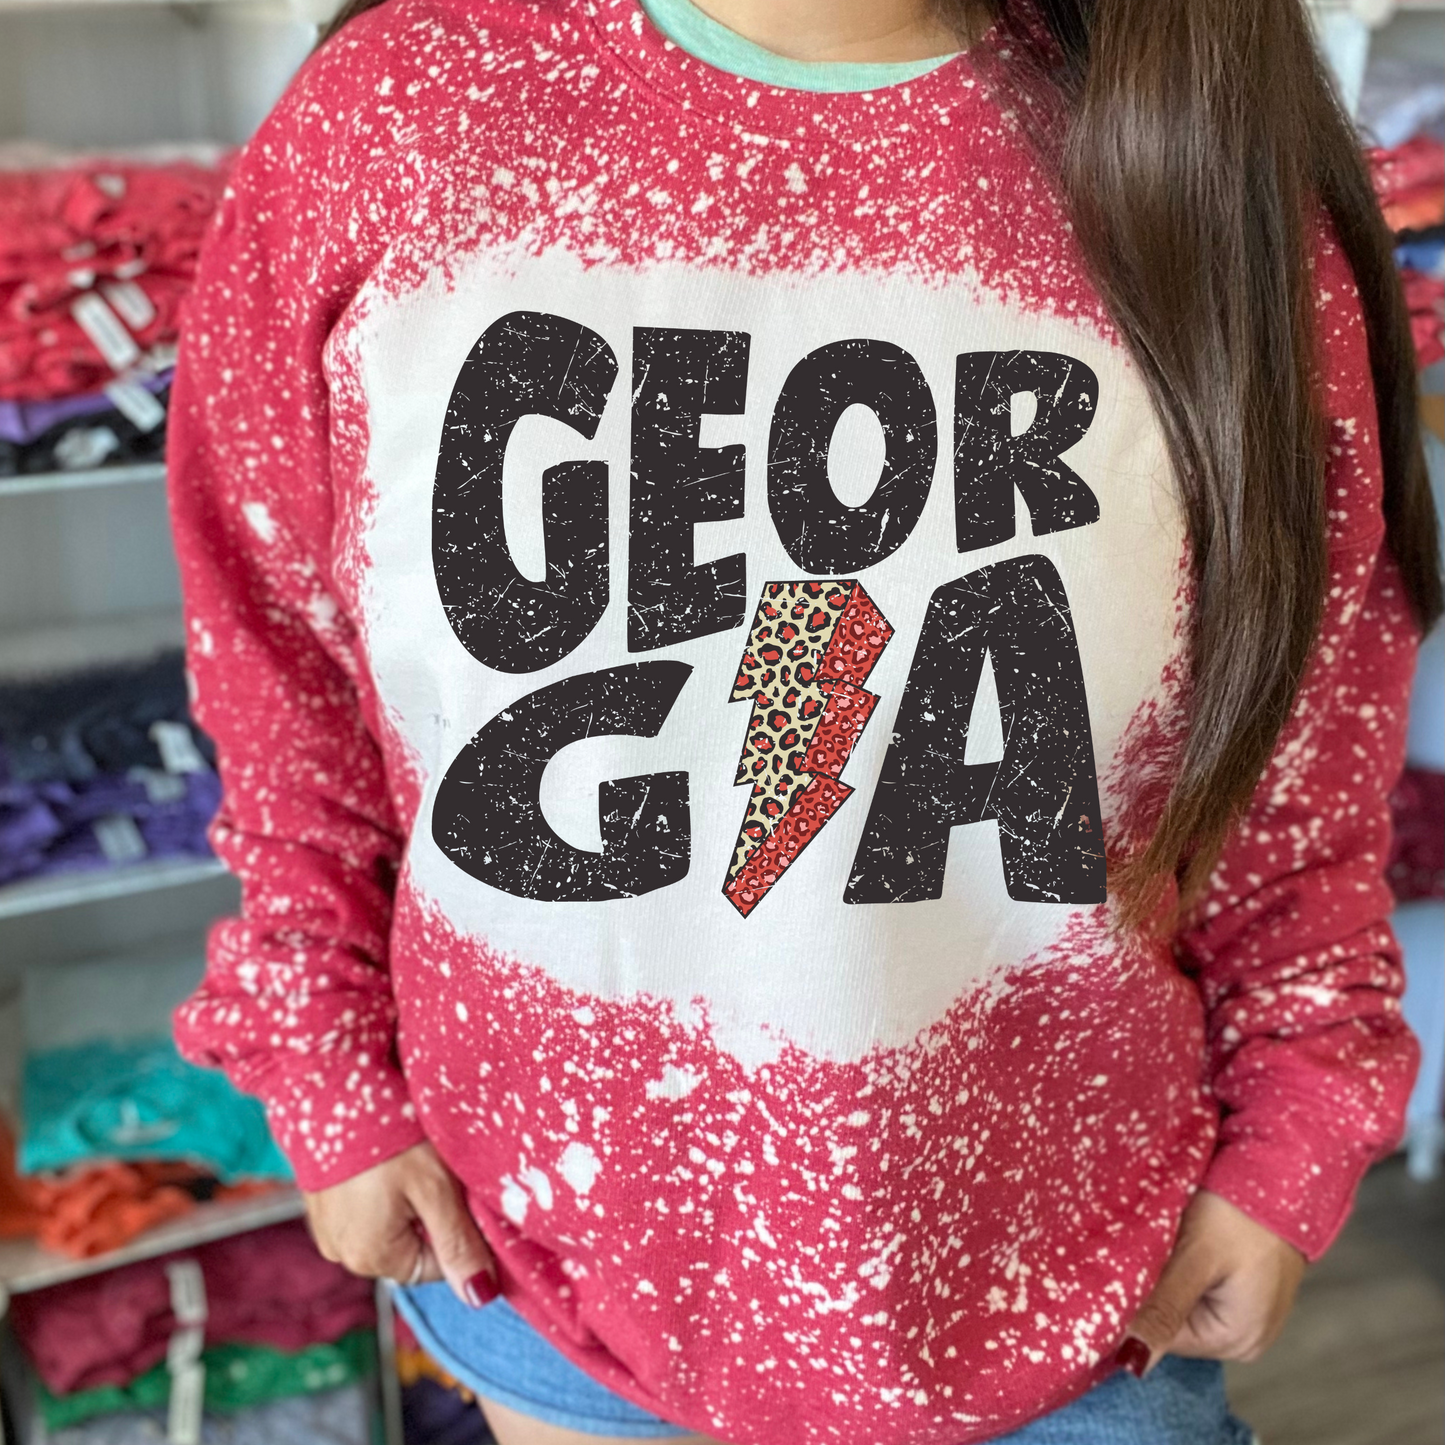 Georgia Bleached Sweatshirt